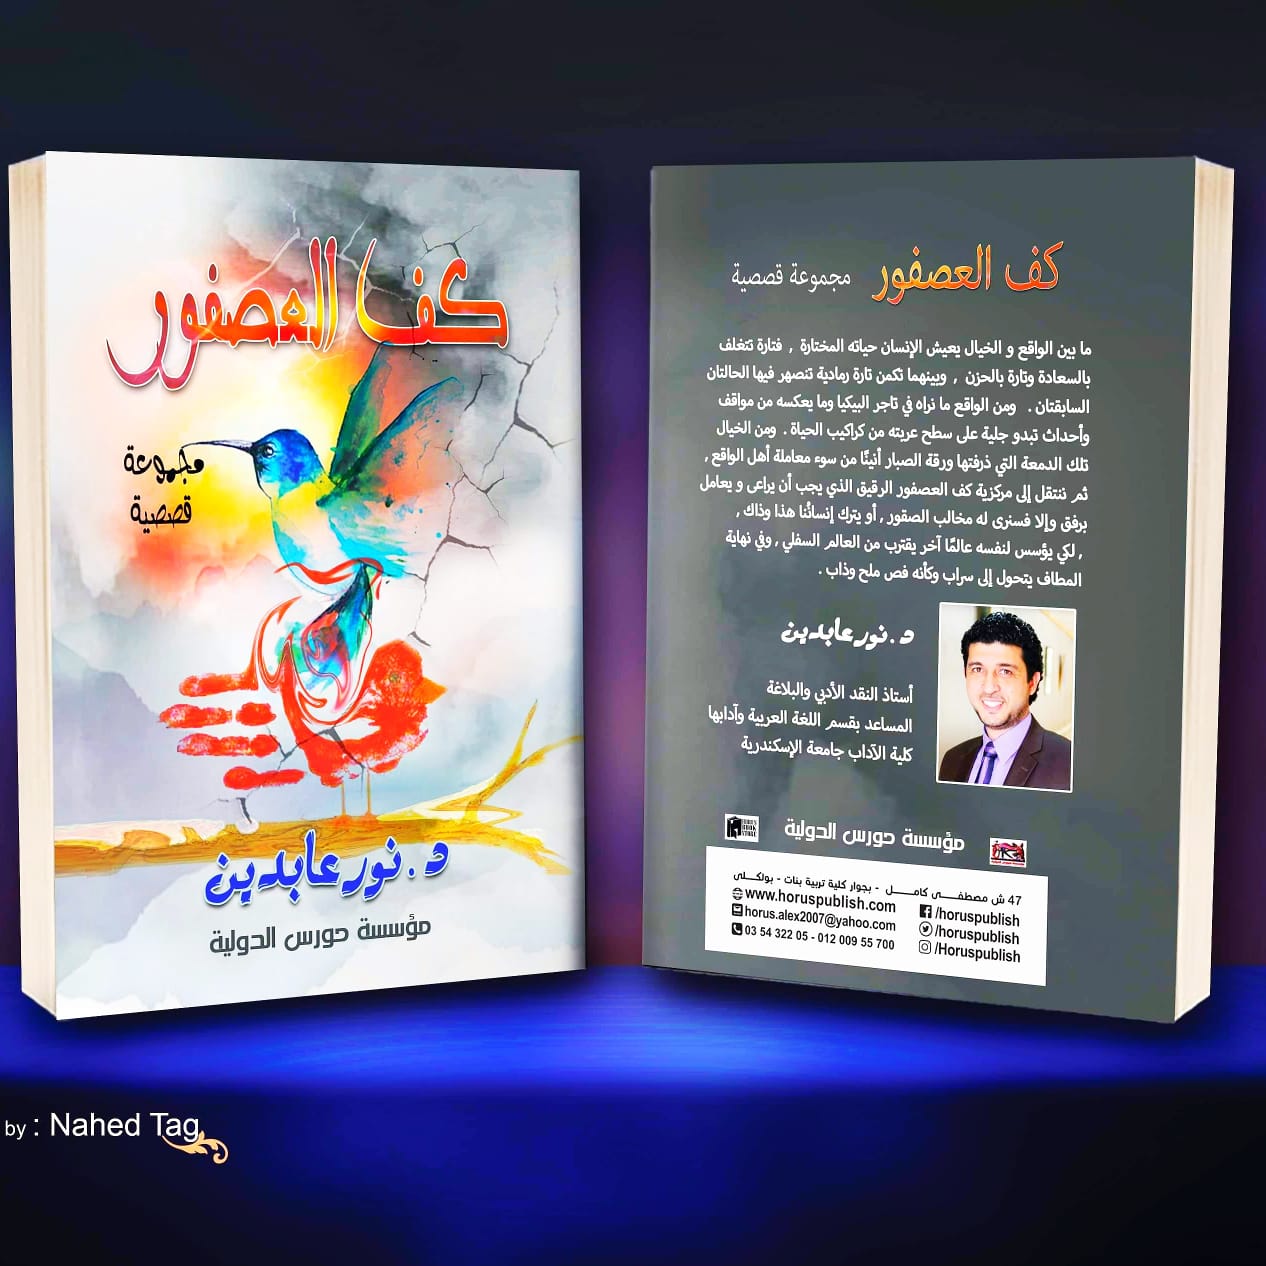     د. نور عابدين يشارك في معرض القاهرة للكتاب بالمجموعة القصصية «كف العصفور»